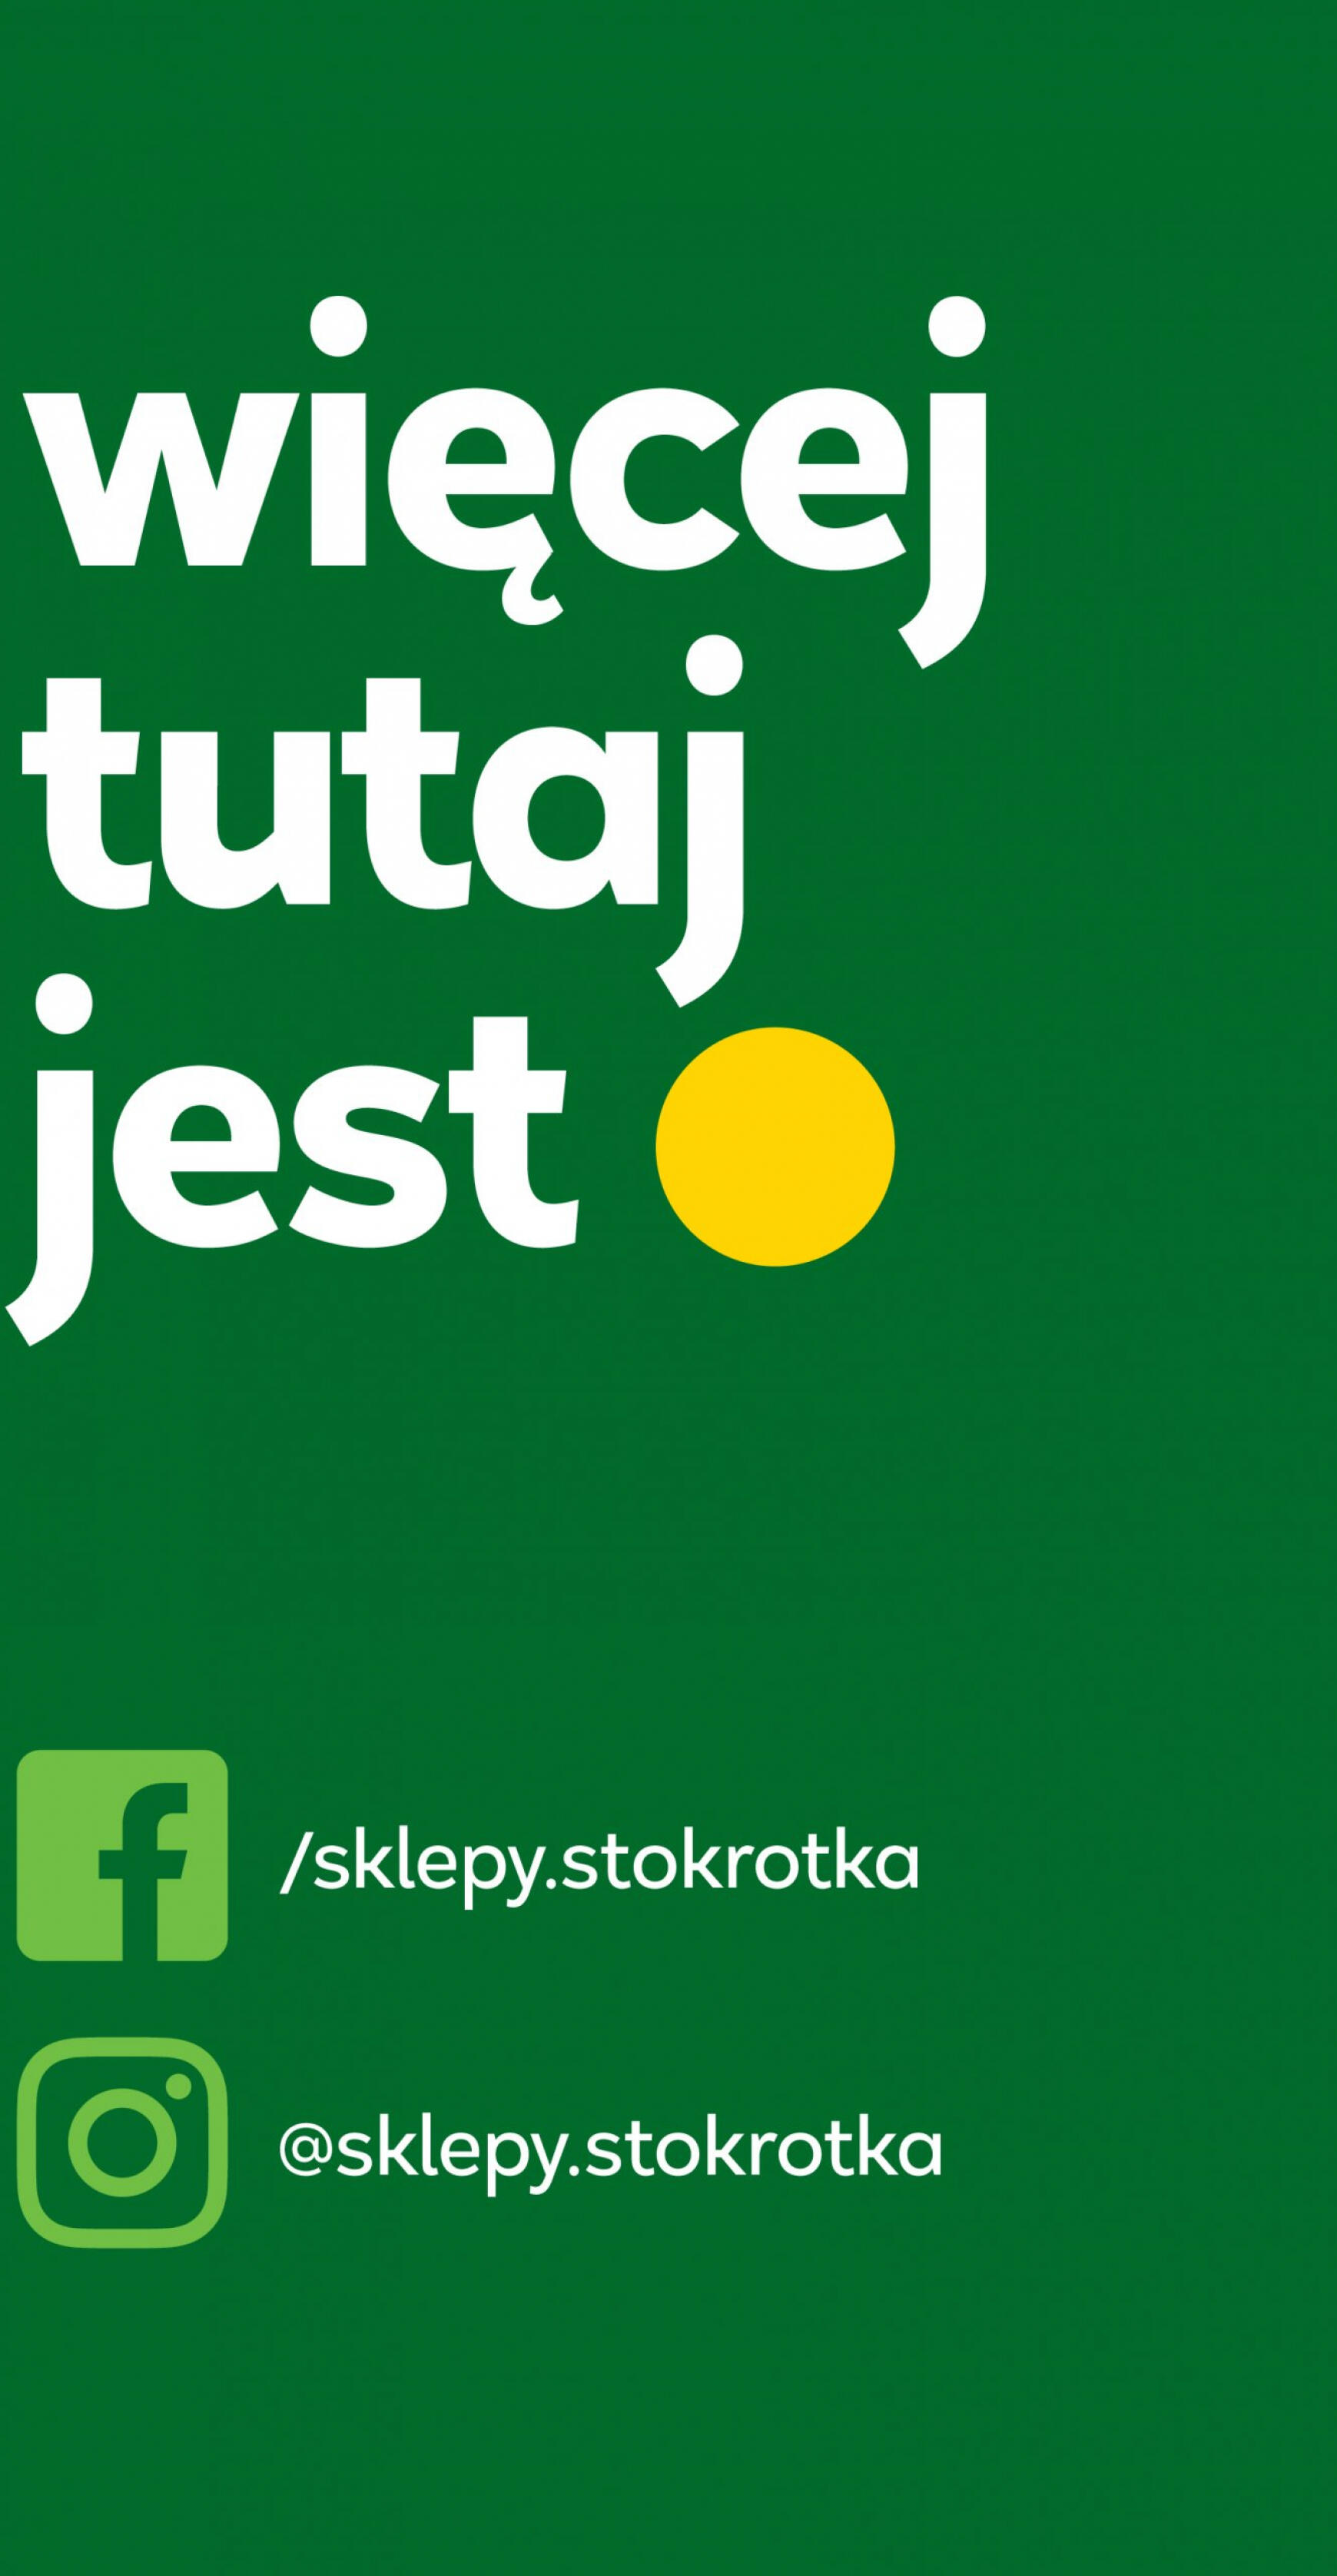 stokrotka - Stokrotka Market gazetka aktualna ważna od 11.04. - 17.04. - page: 18